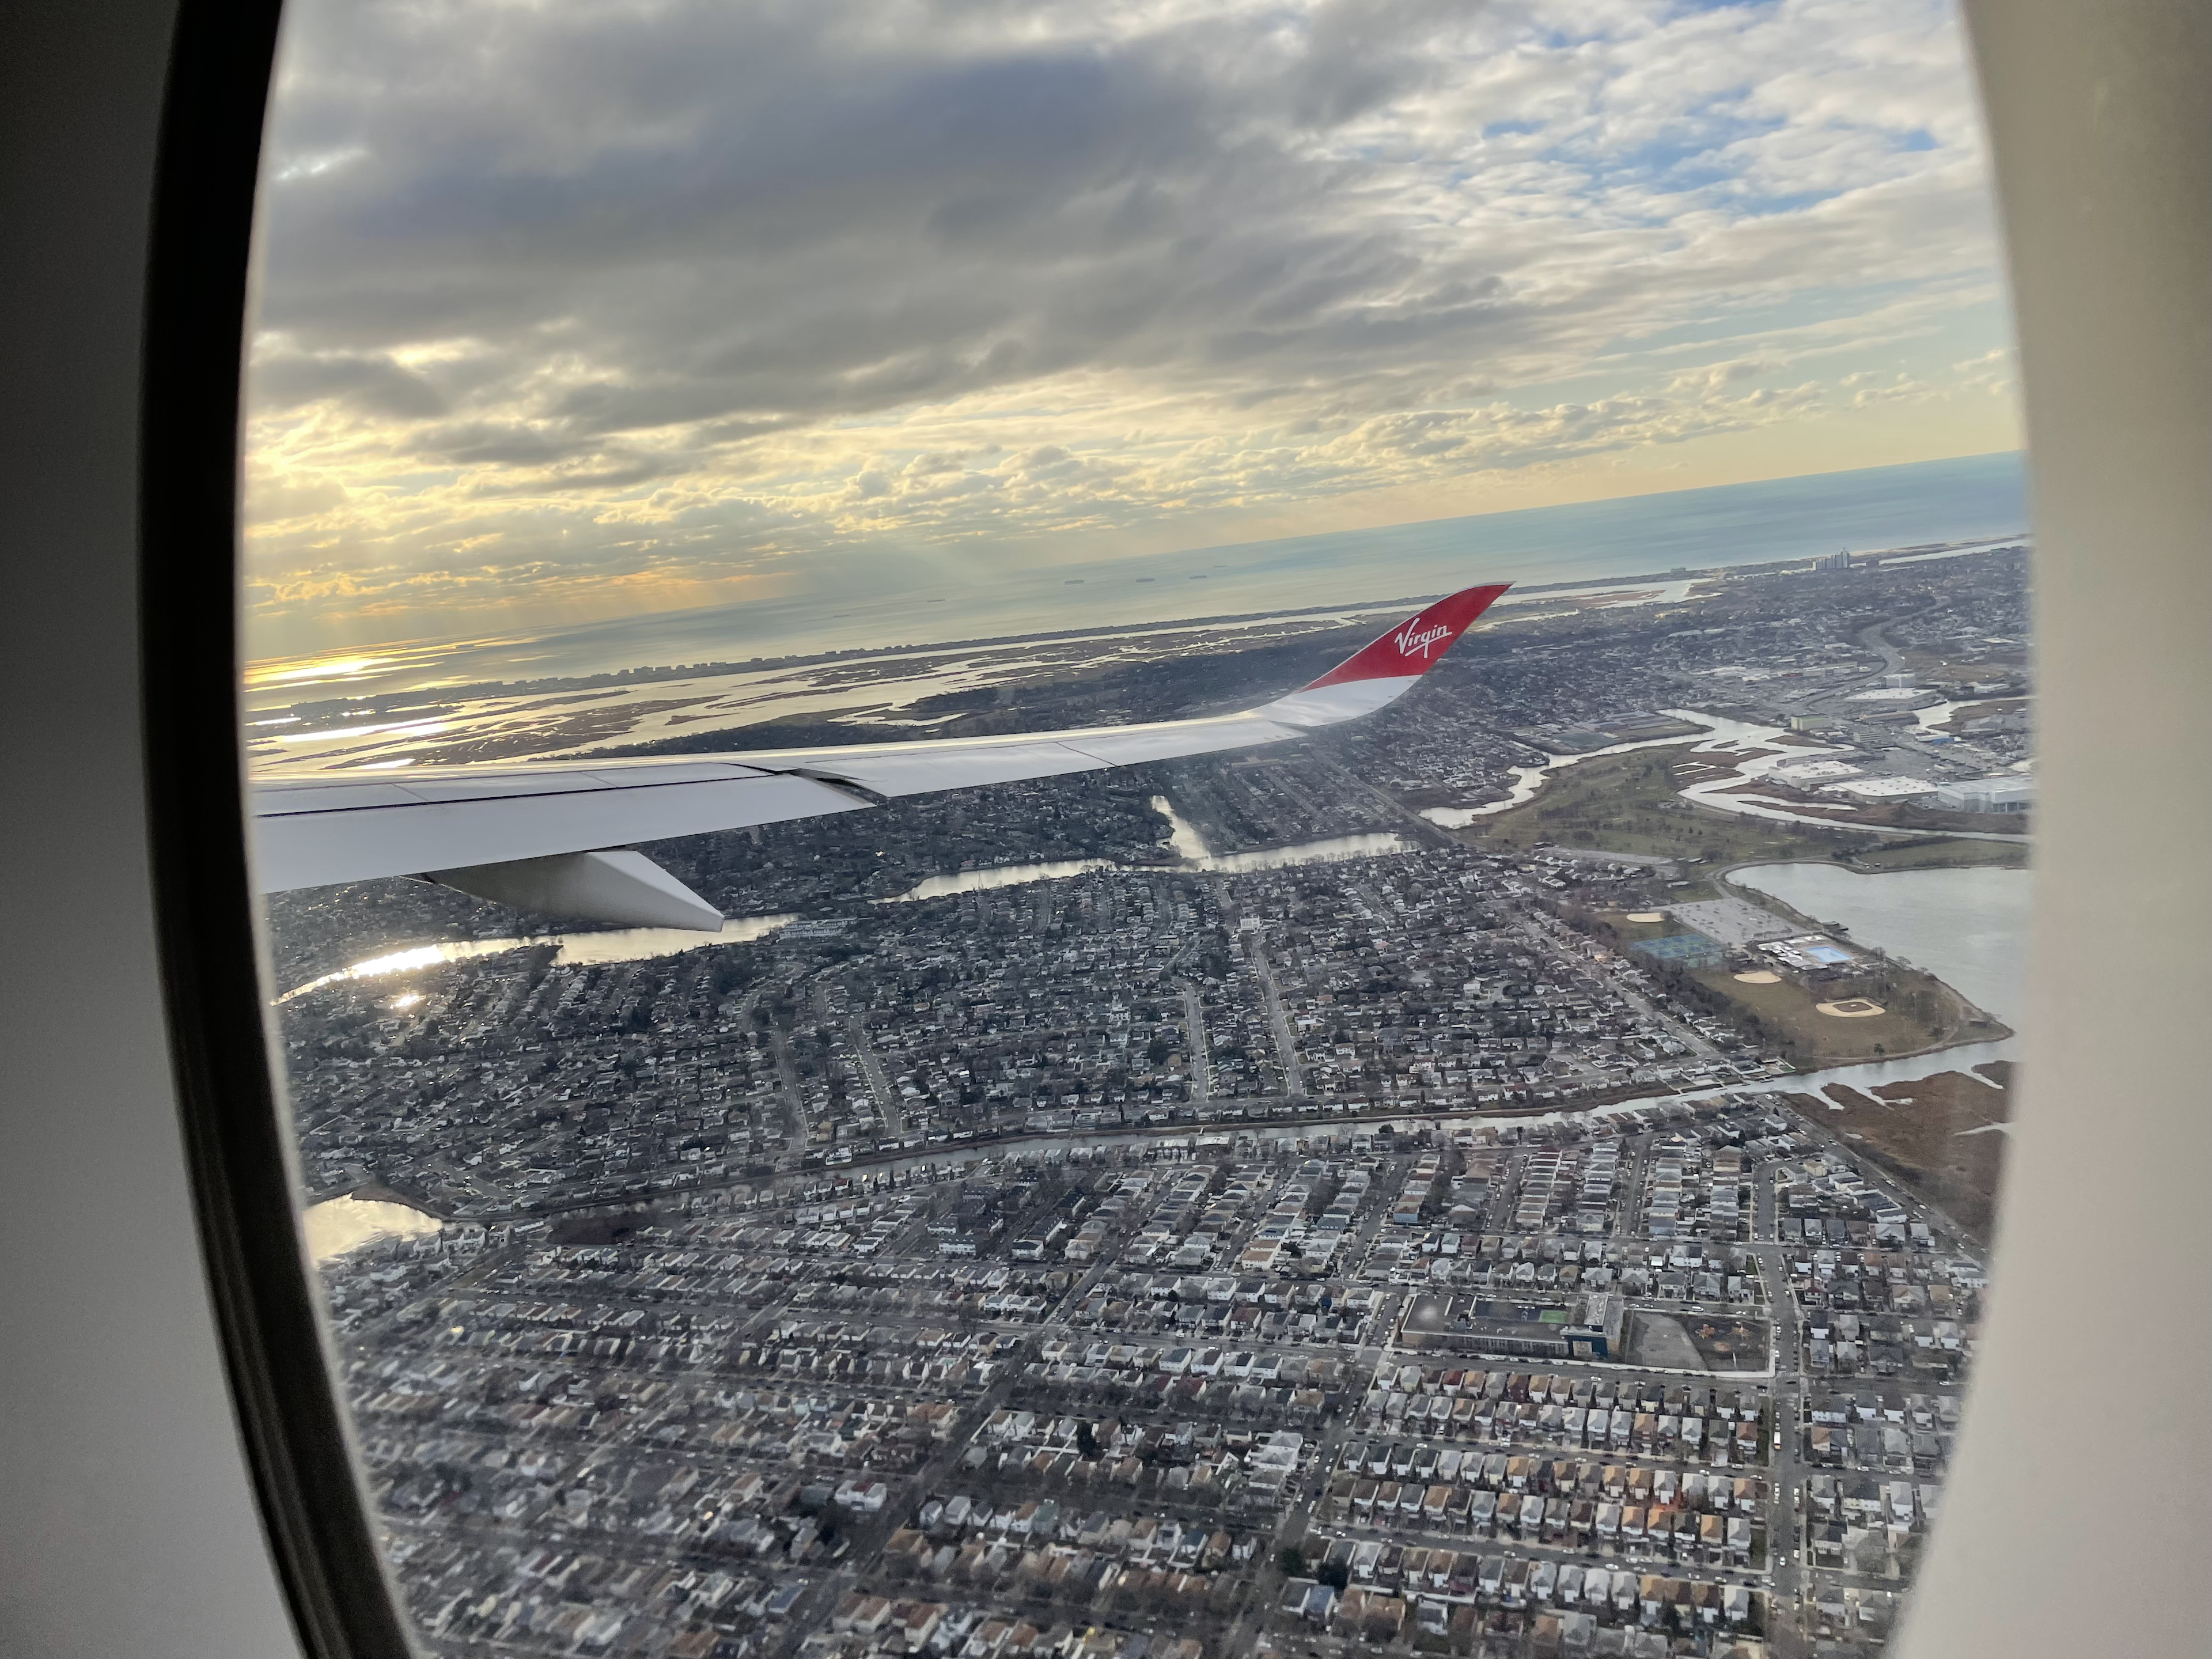 Window from a plane in flight